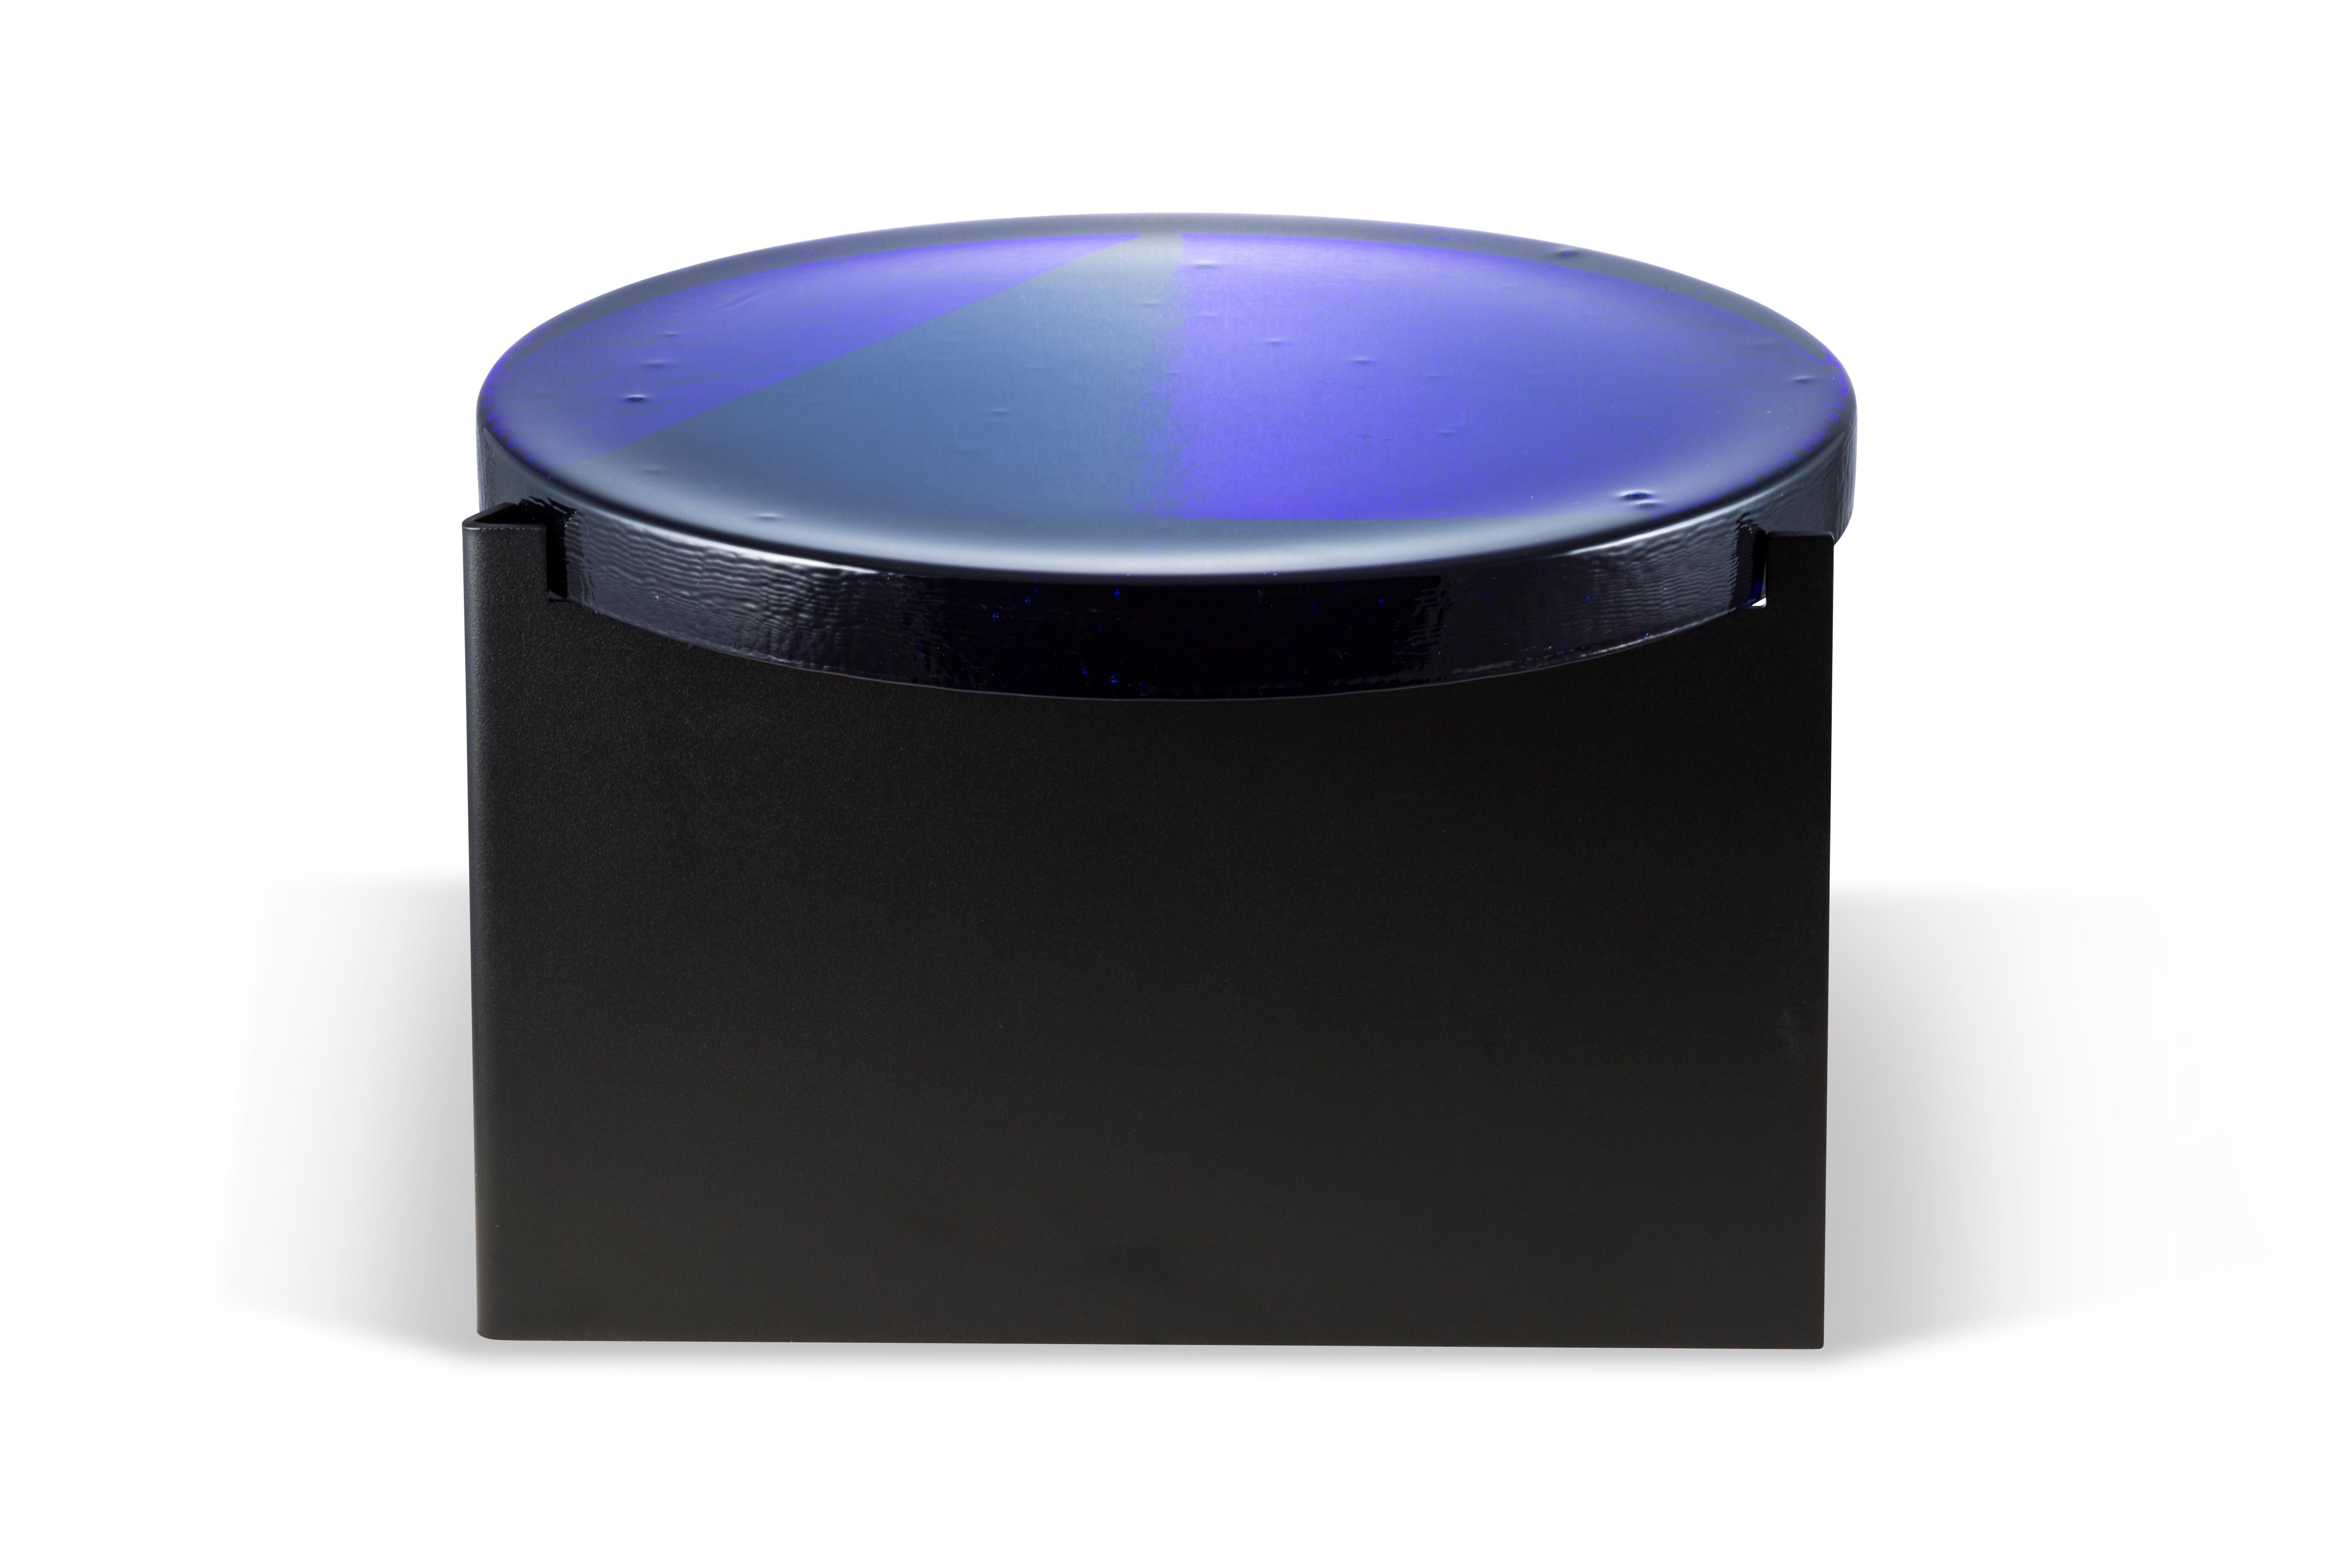 Table basse Alwa one big blue black par Pulpo.
Dimensions : D56 x H35 cm.
Coates : verre moulé ; acier peint par poudrage.

Disponible également en différentes finitions. 

Normalement, le verre est considéré comme un matériau léger aux arêtes